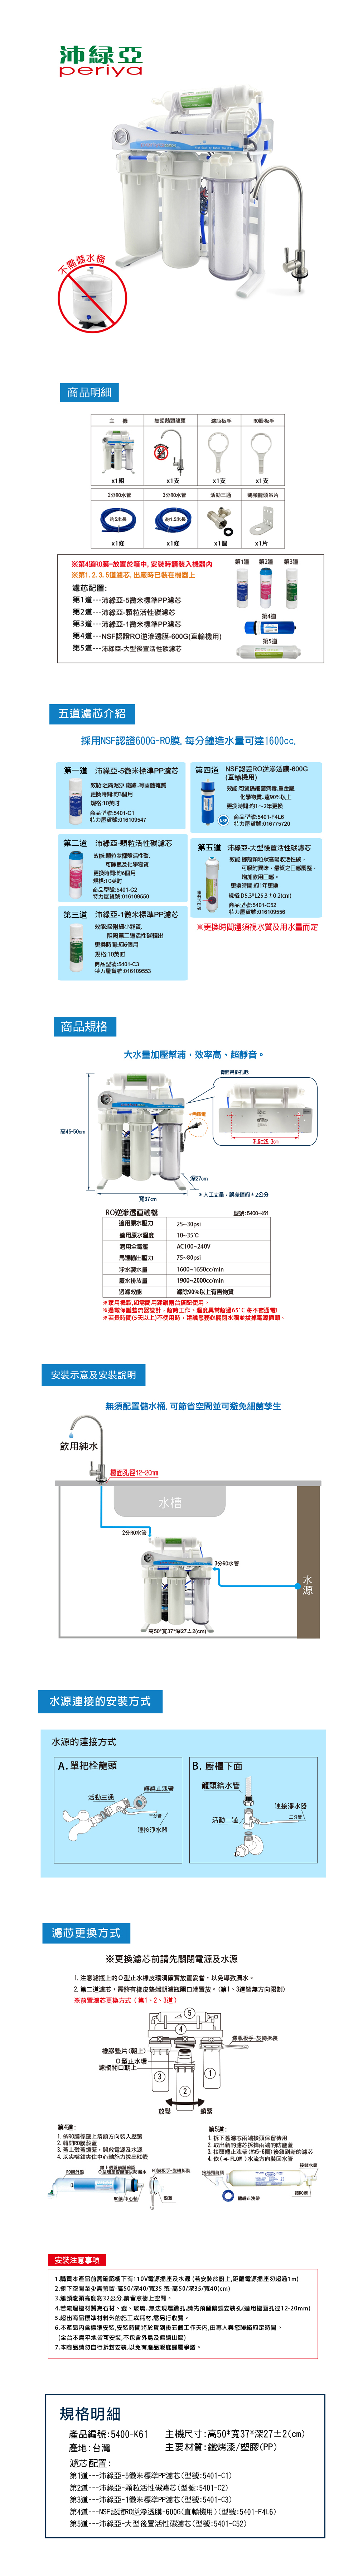 沛綠亞-免儲水桶RO逆滲透直輸機(600G)